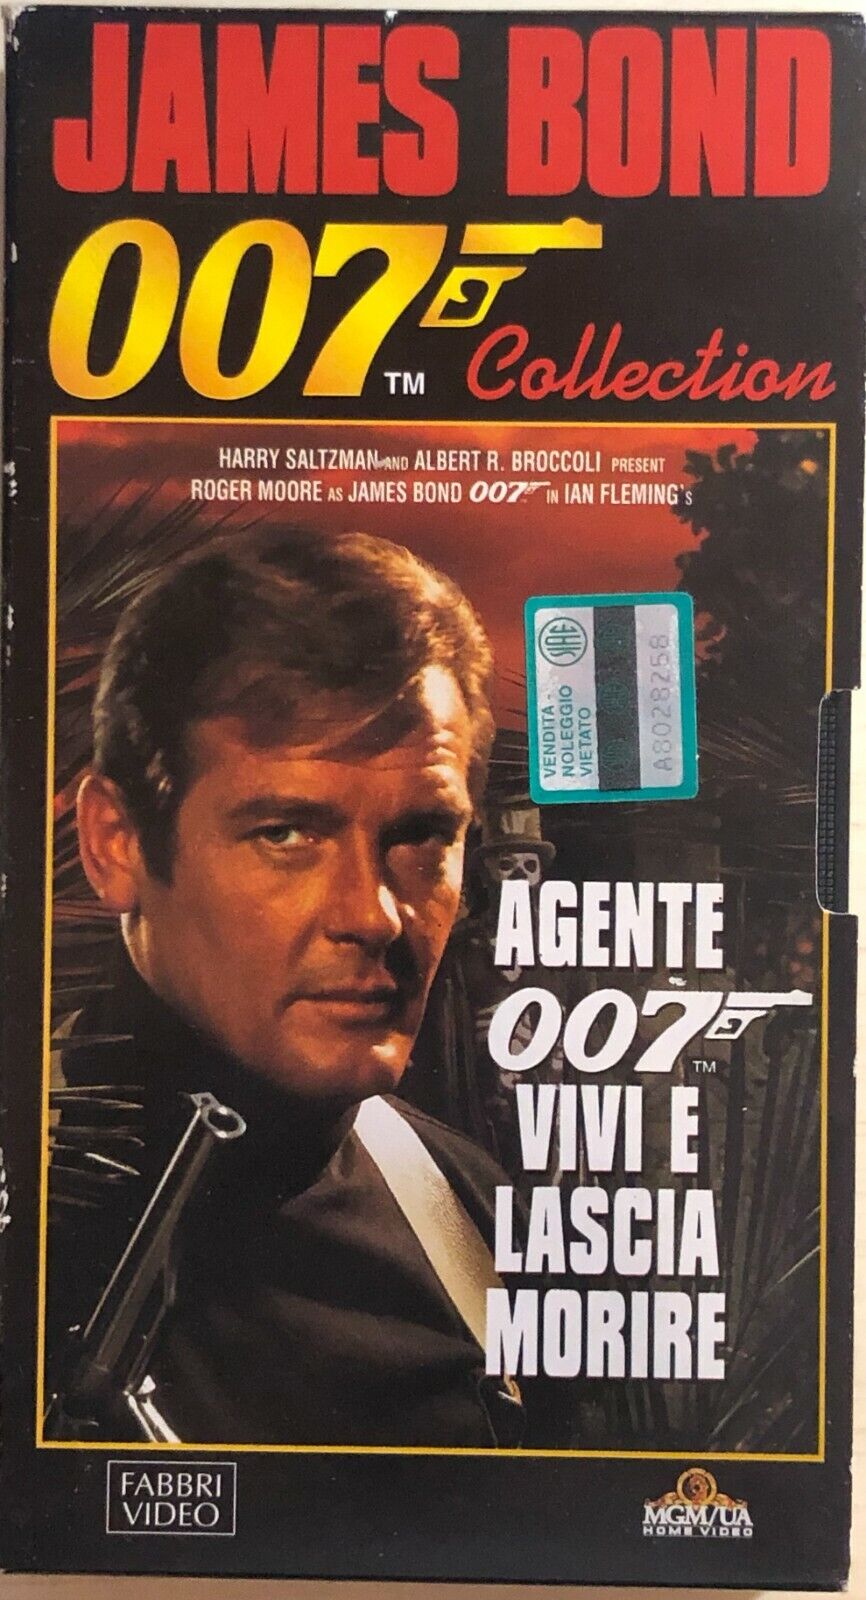 Agente 007 - Vivi e lascia morire VHS di Guy Hamilton, 1973, Fabbri Video